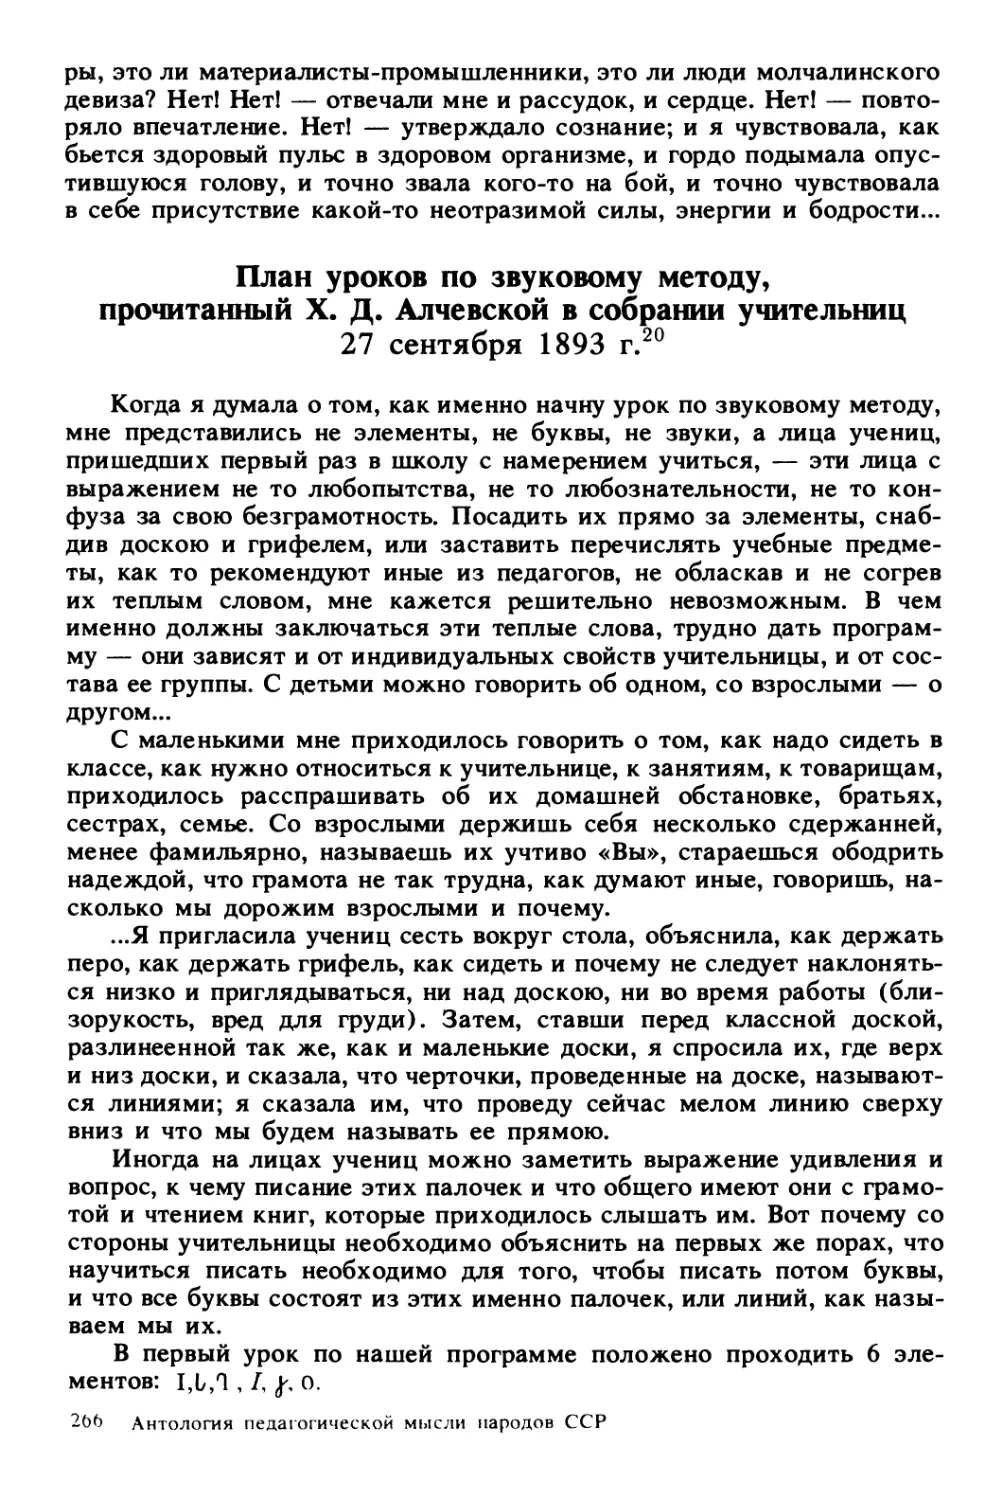 План уроков по звуковому методу, прочитанный X.Д. Алчевской в собрании учительниц 27 сентября 1893 г.